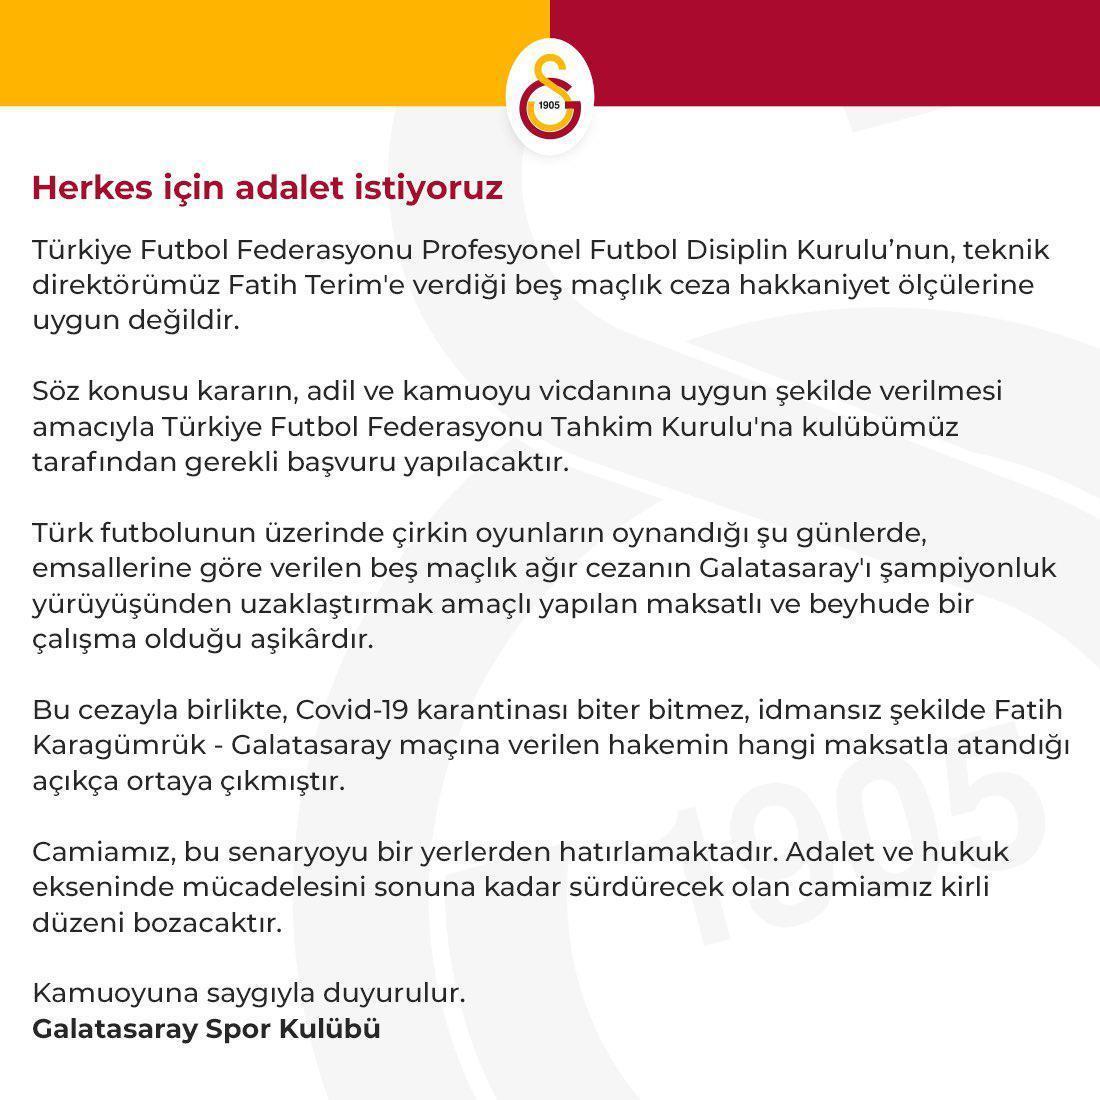 Galatasaray Kulübünden son dakika açıklaması: Kirli düzeni bozacağız